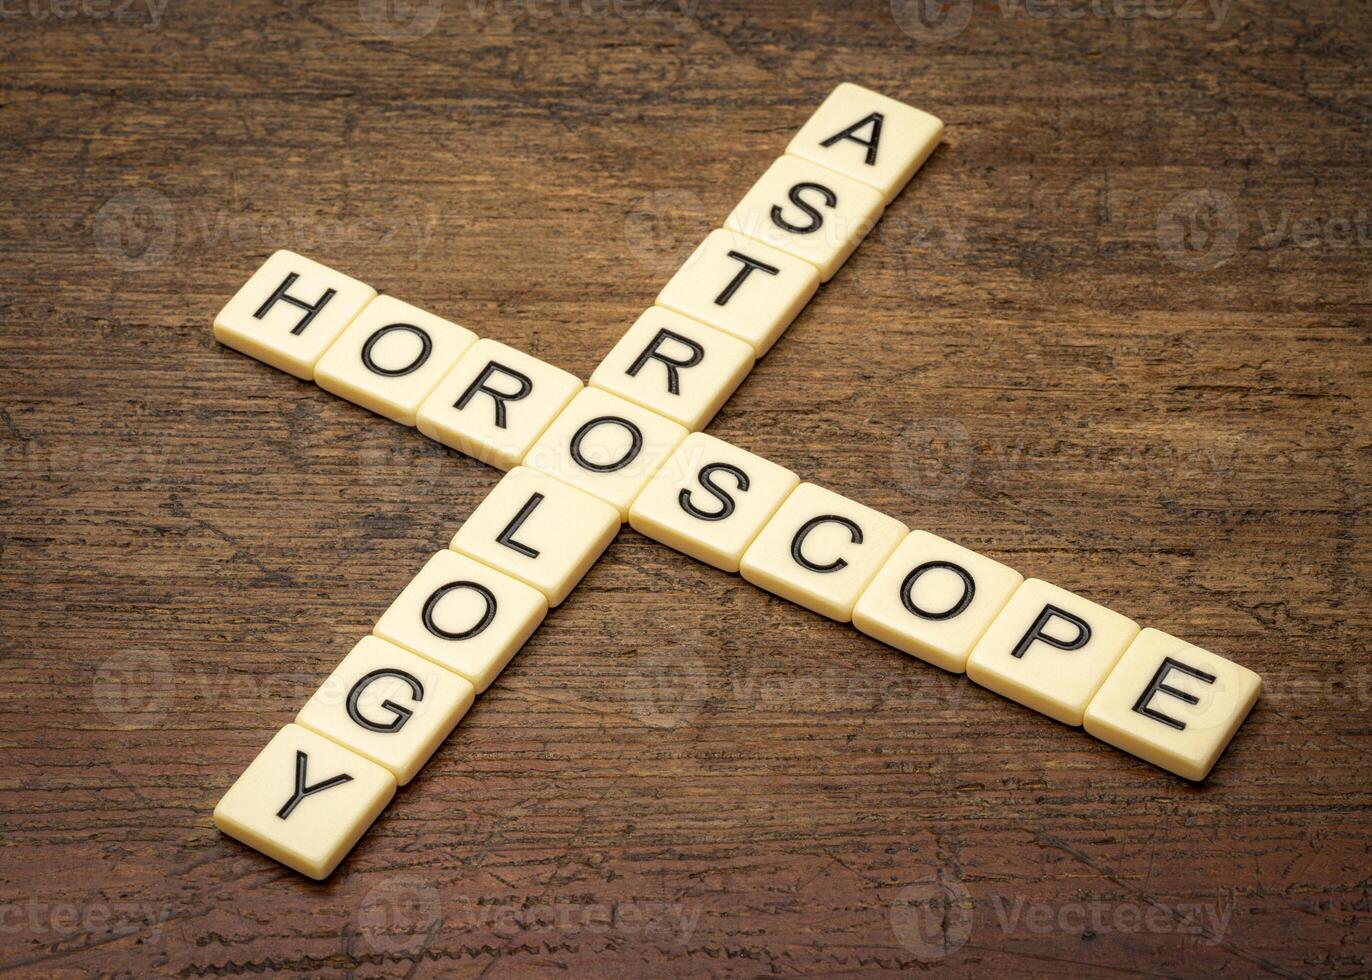 astrologia e horóscopo palavras cruzadas dentro marfim carta azulejos contra rústico resistido madeira foto